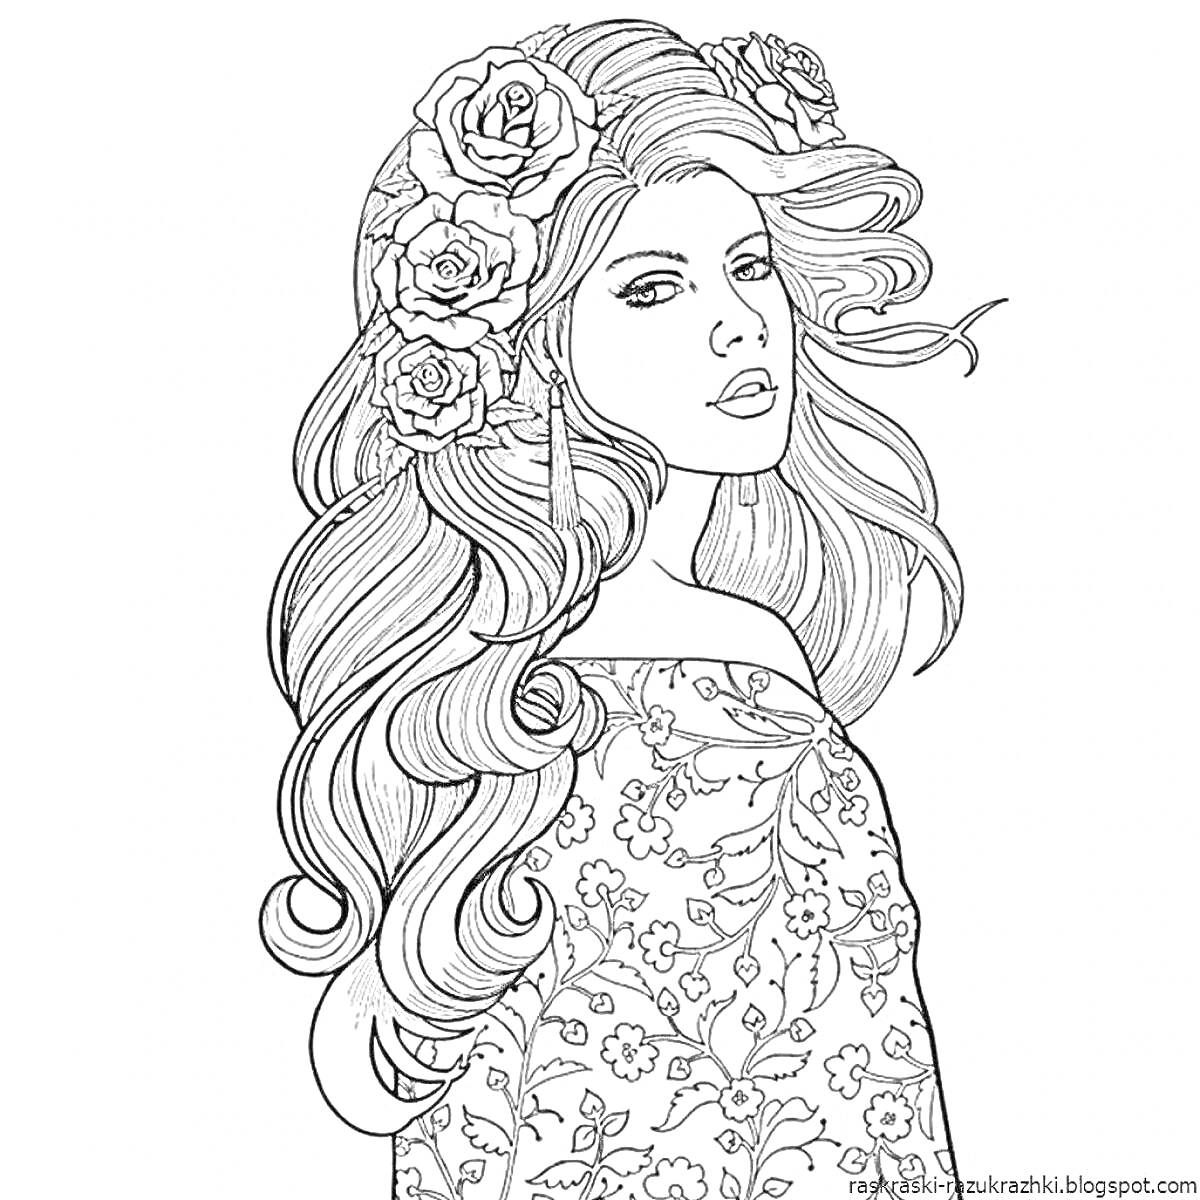 Раскраска Девушка с цветами в волосах и цветочным узором на одежде